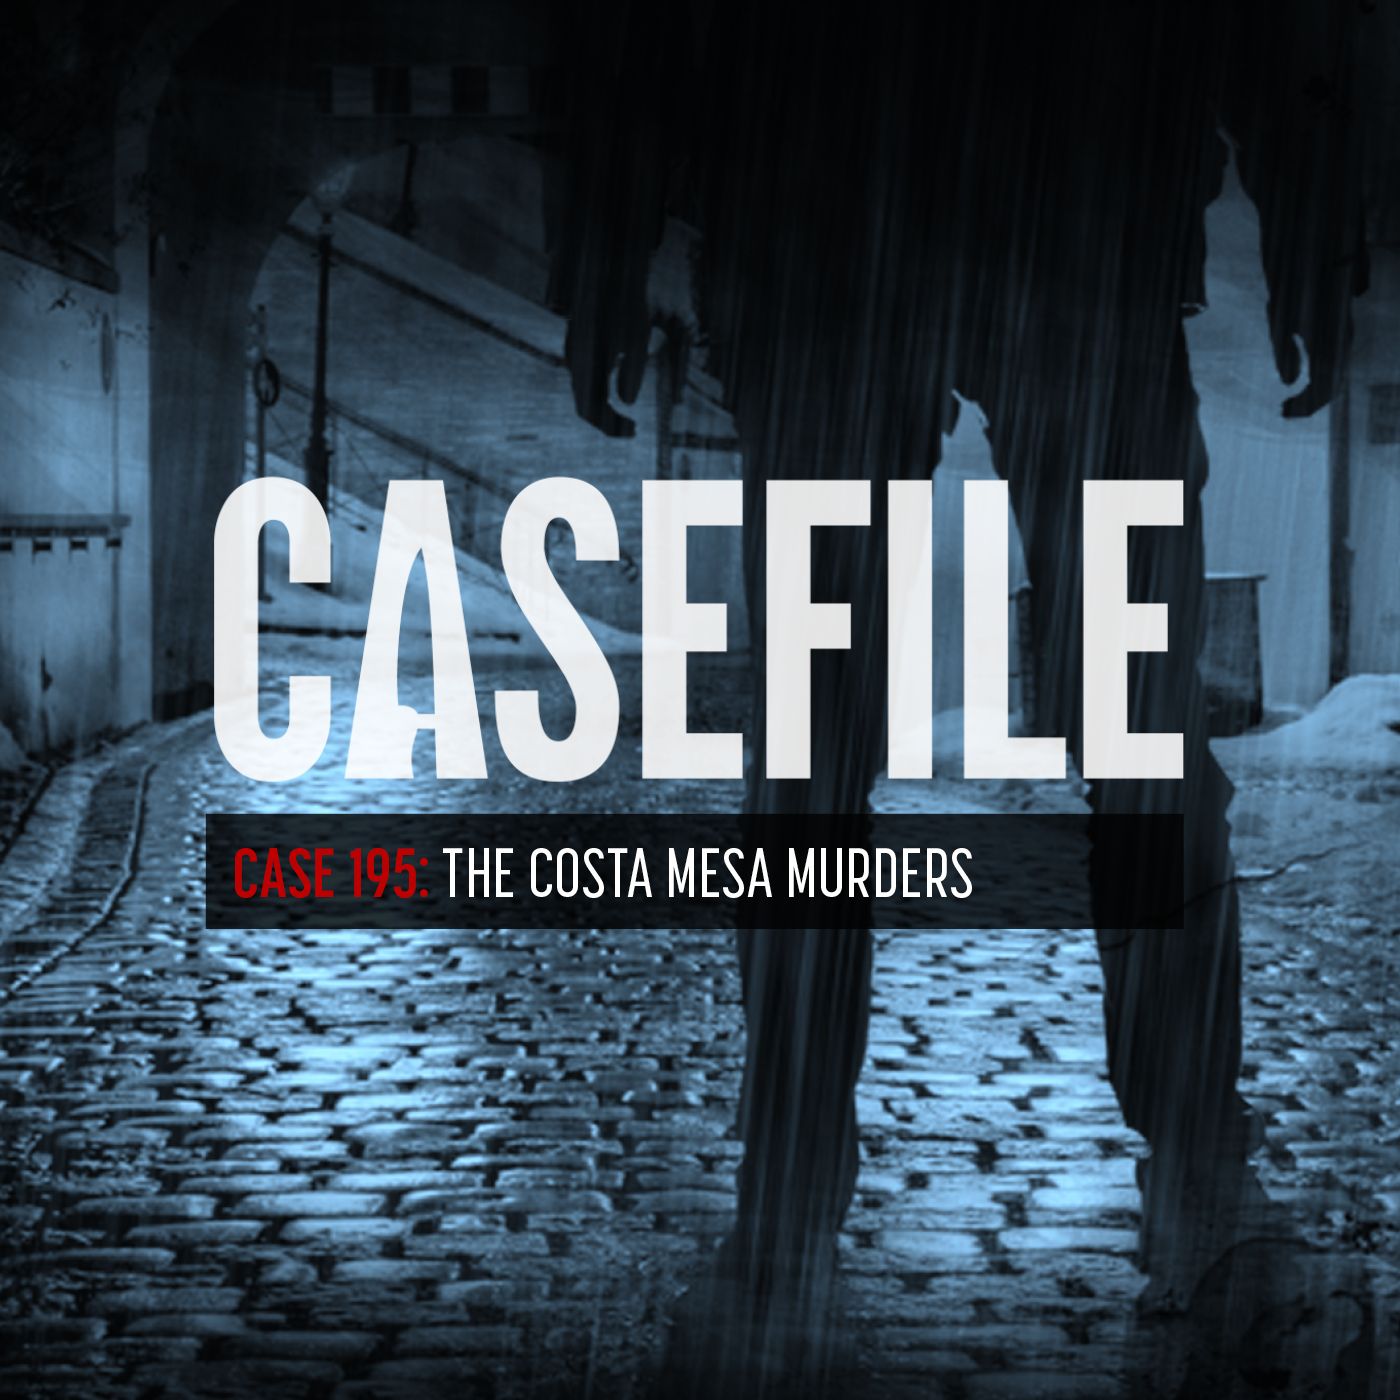 Case 195: The Costa Mesa Murders